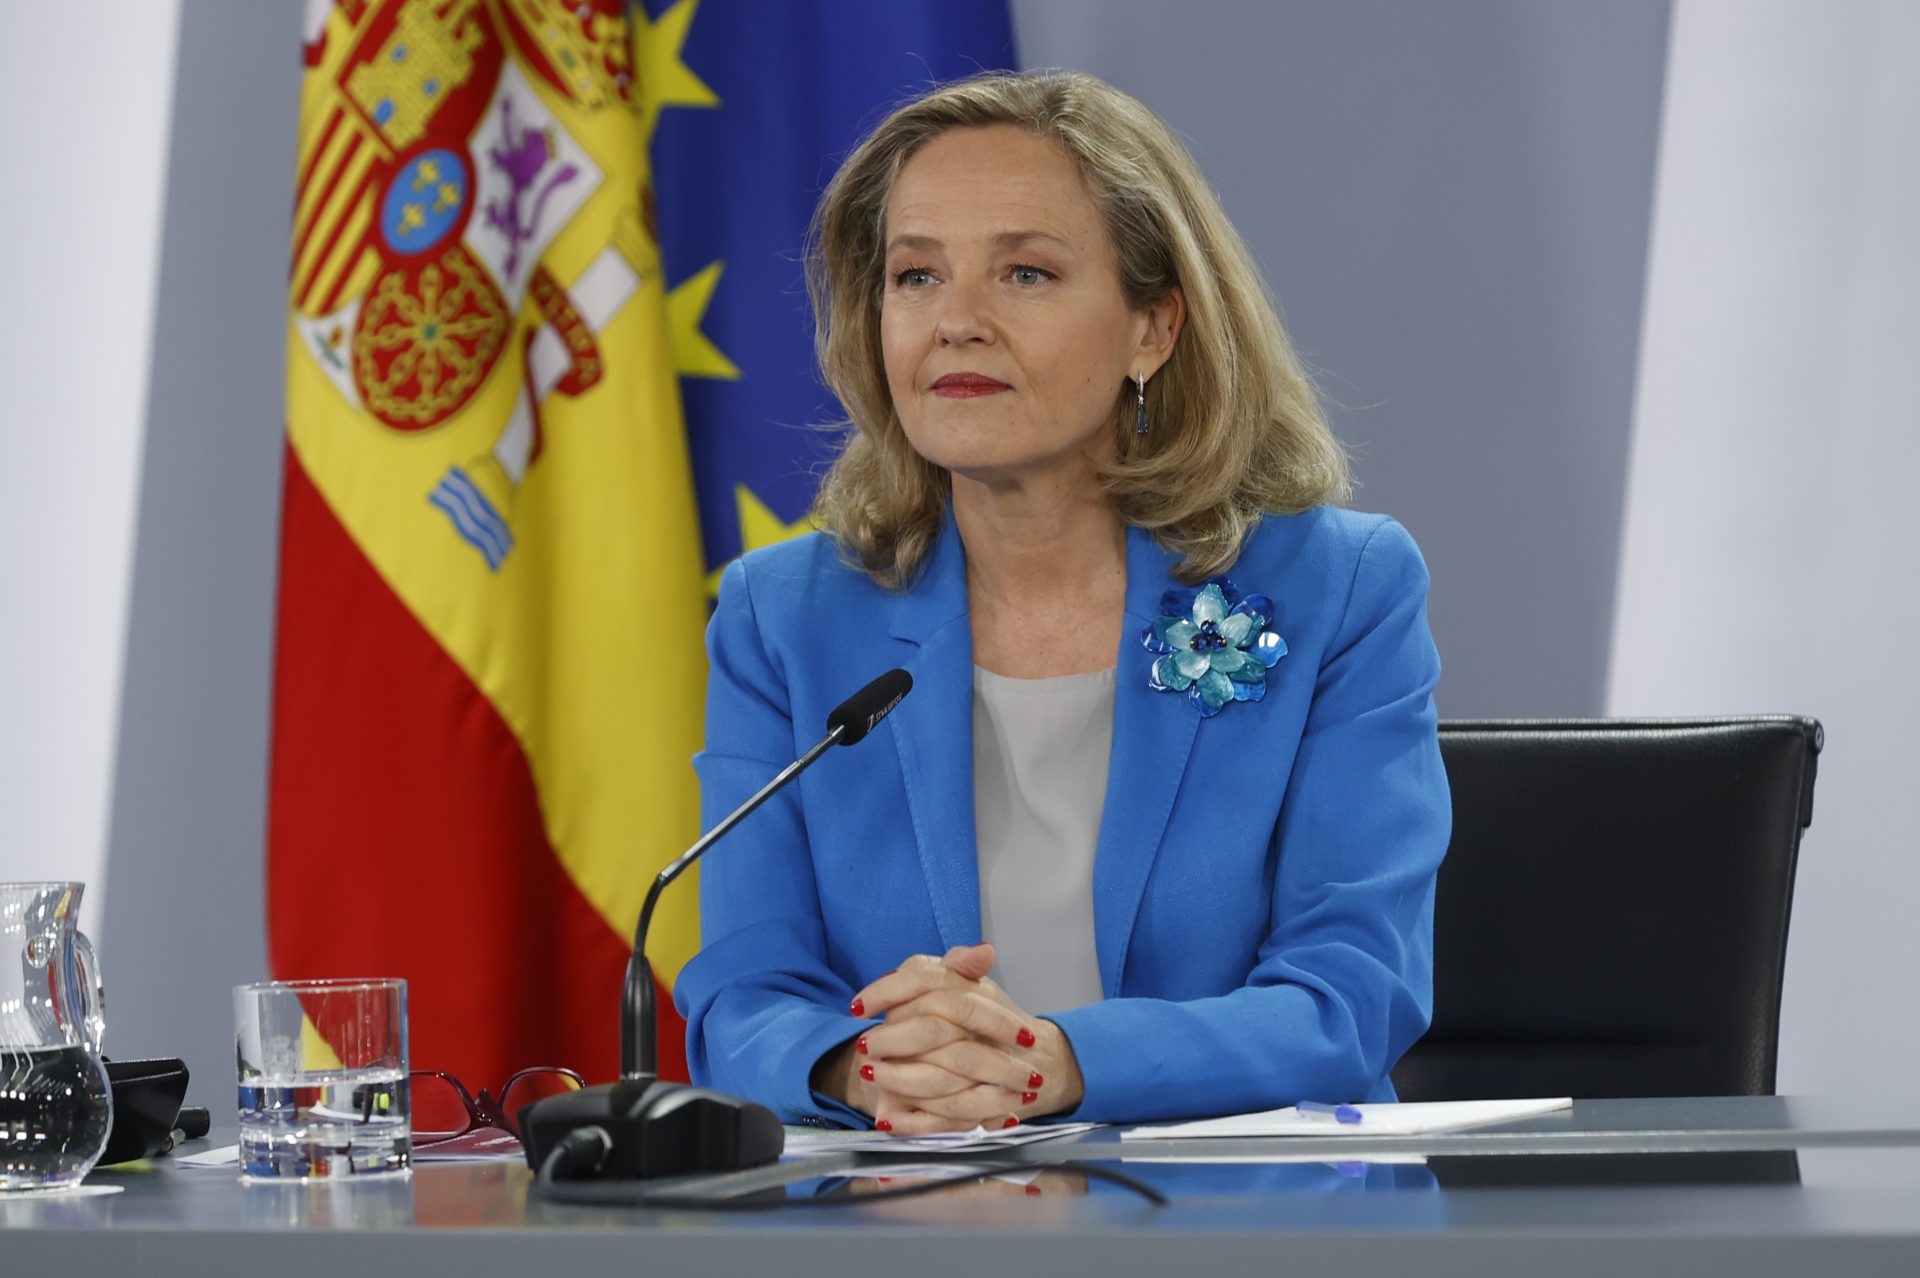 La ministra de Economía, Nadia Calviño, que fue denunciada por supuestos contratos covid.